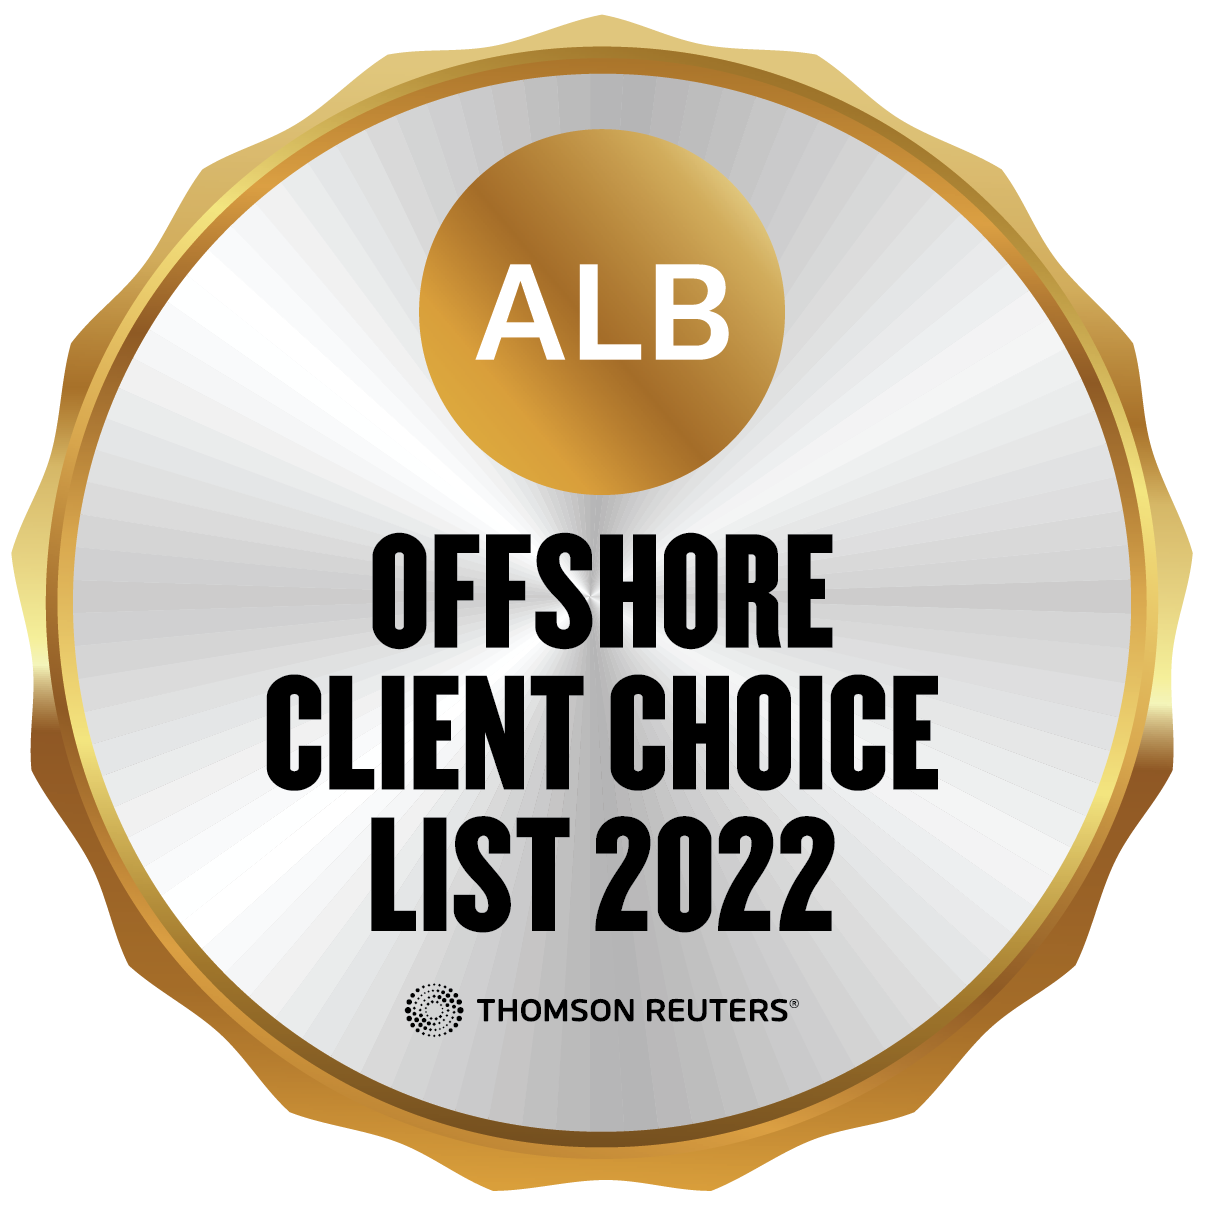 ALB Offshore Client Choice List 2022